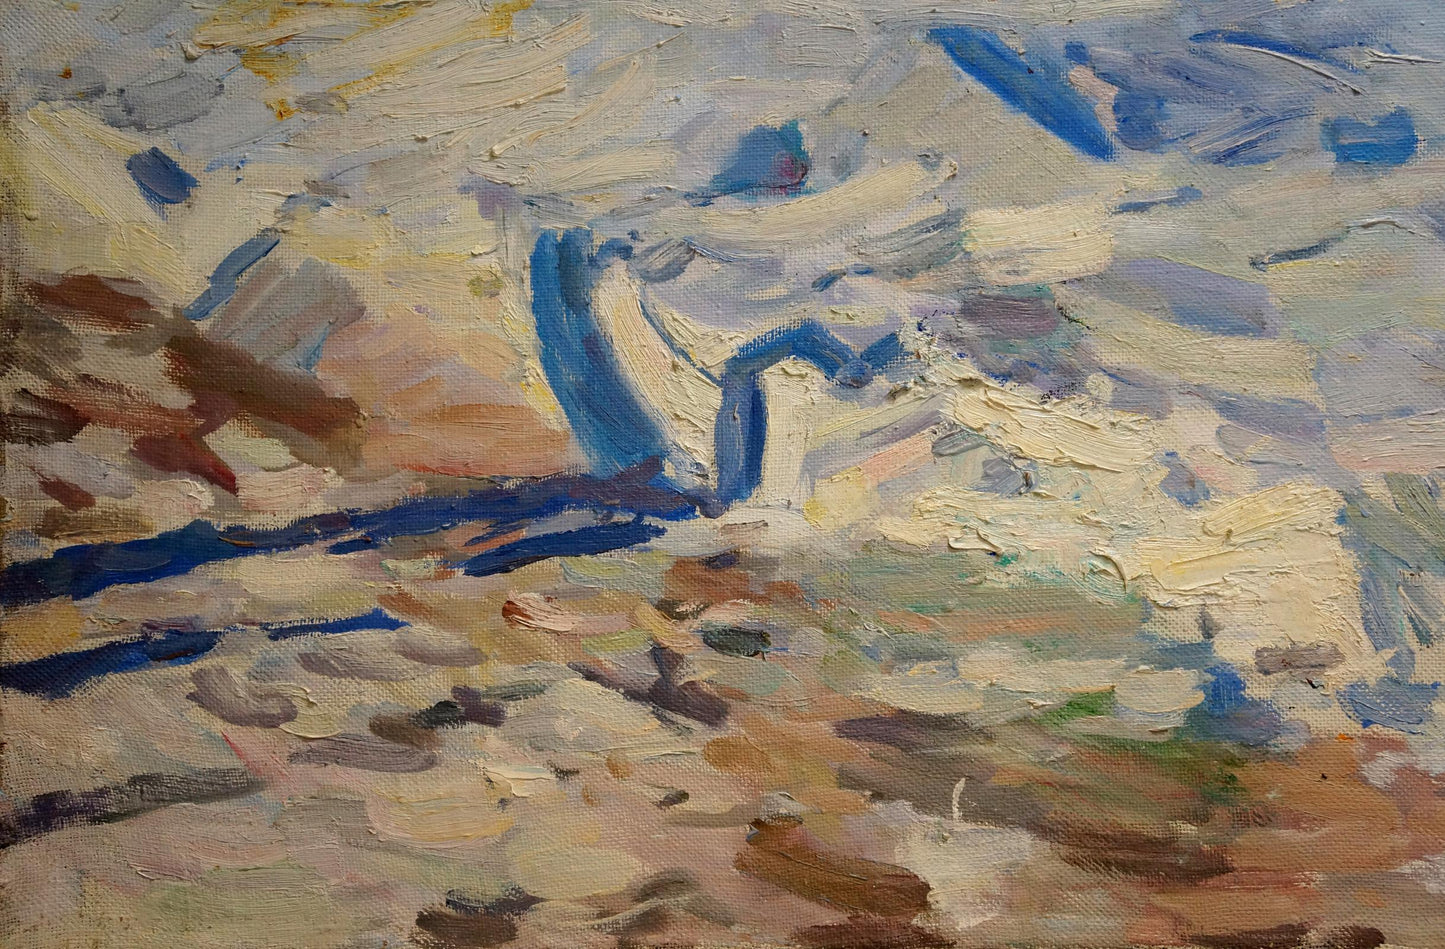 Oil painting Winter landscape Samokhvalov A.N.